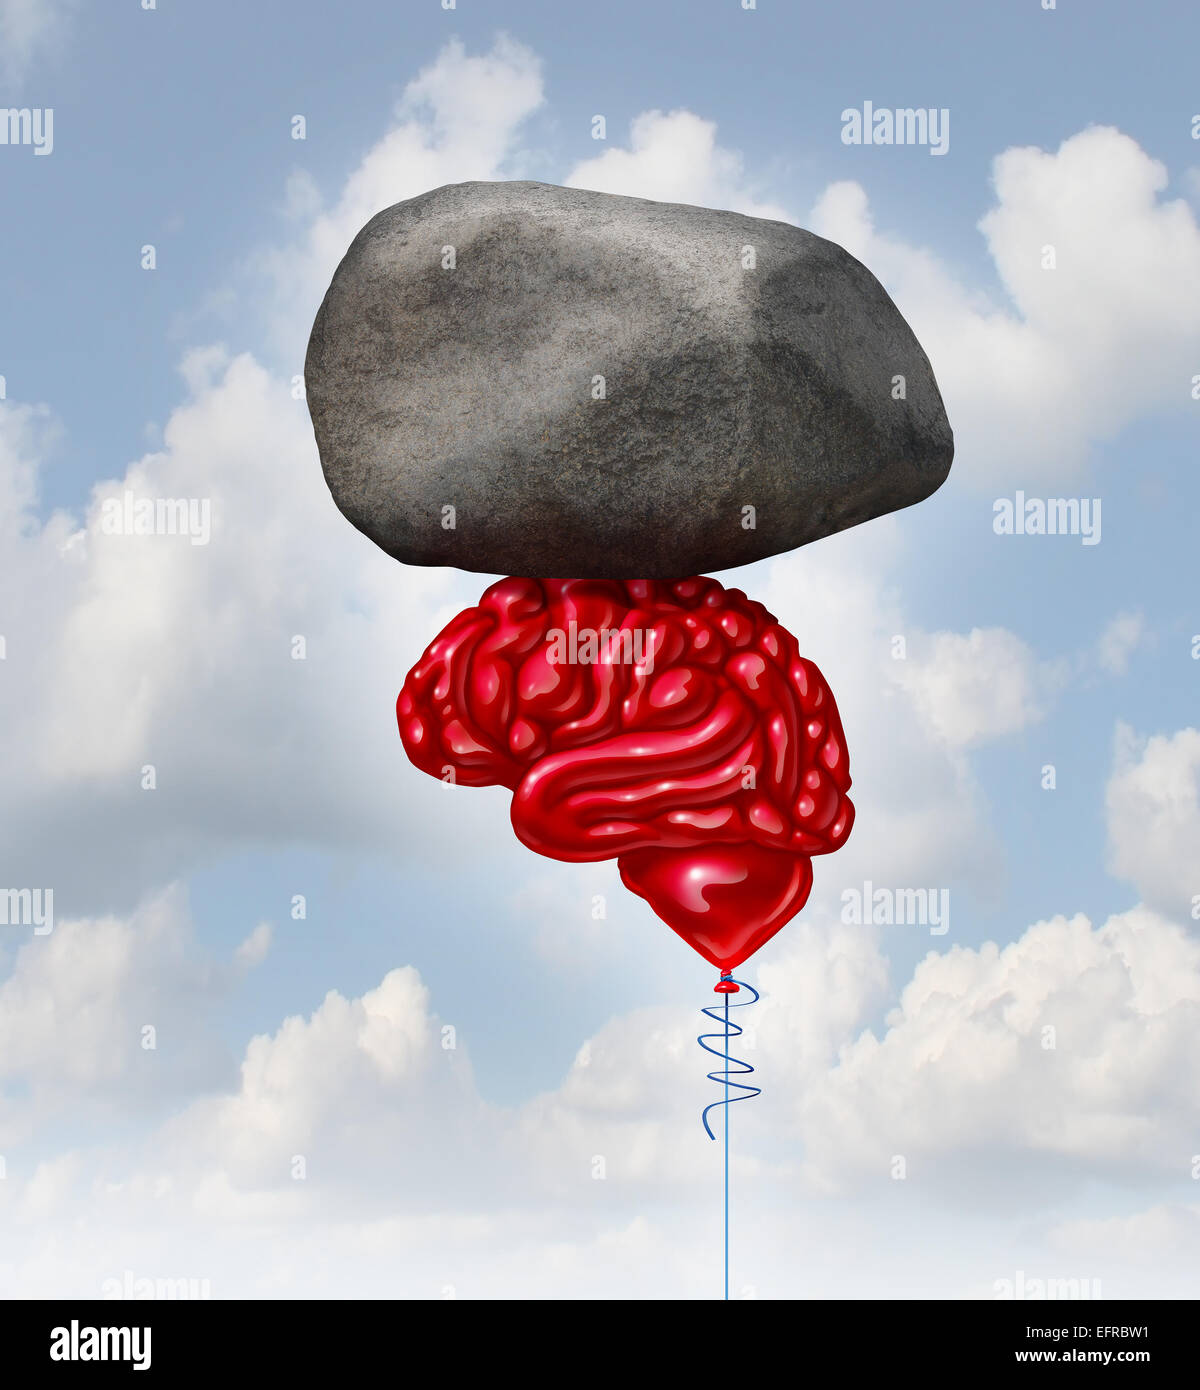 Brain power concept comme un ballon rouge en forme d'un organe de la pensée humaine en soulevant une lourde pierre comme un symbole de la santé mentale et de métaphore pour creatve puissante intelligence et mémoire. Banque D'Images